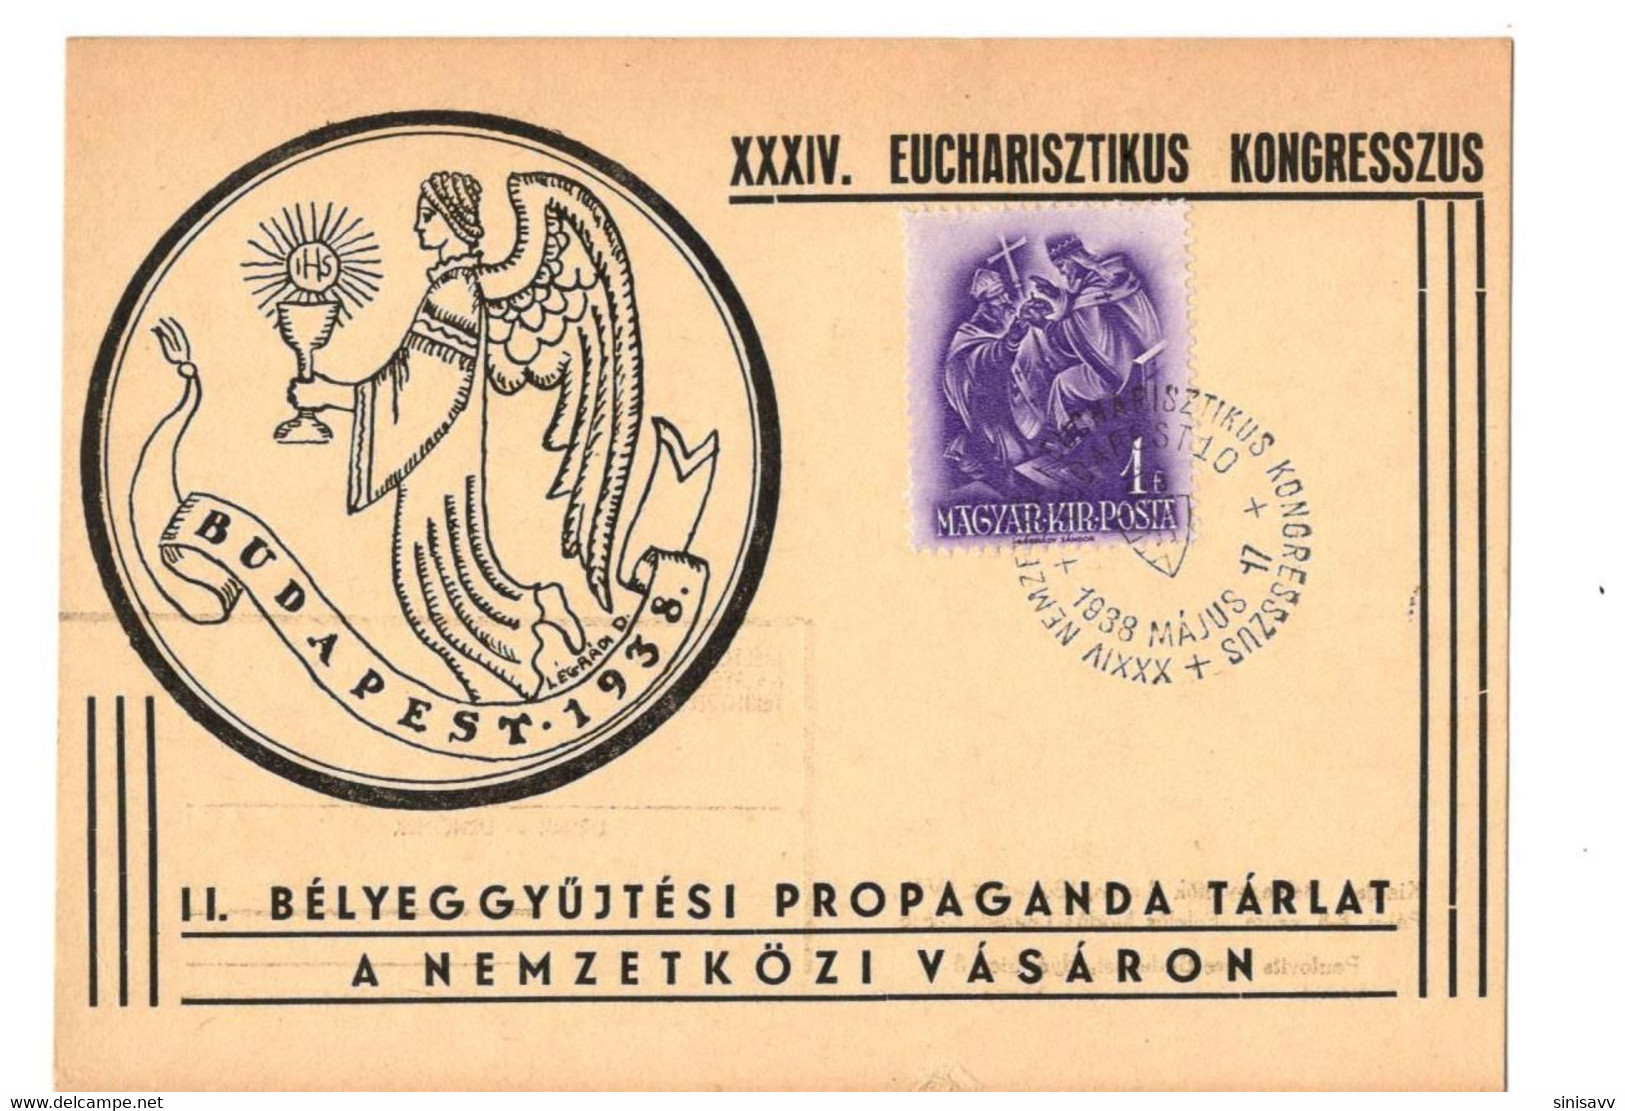 HUNGARY - XXXIV. EUCHARISZTIKUS KONGRESSZUS 1938 - Foglietto Ricordo